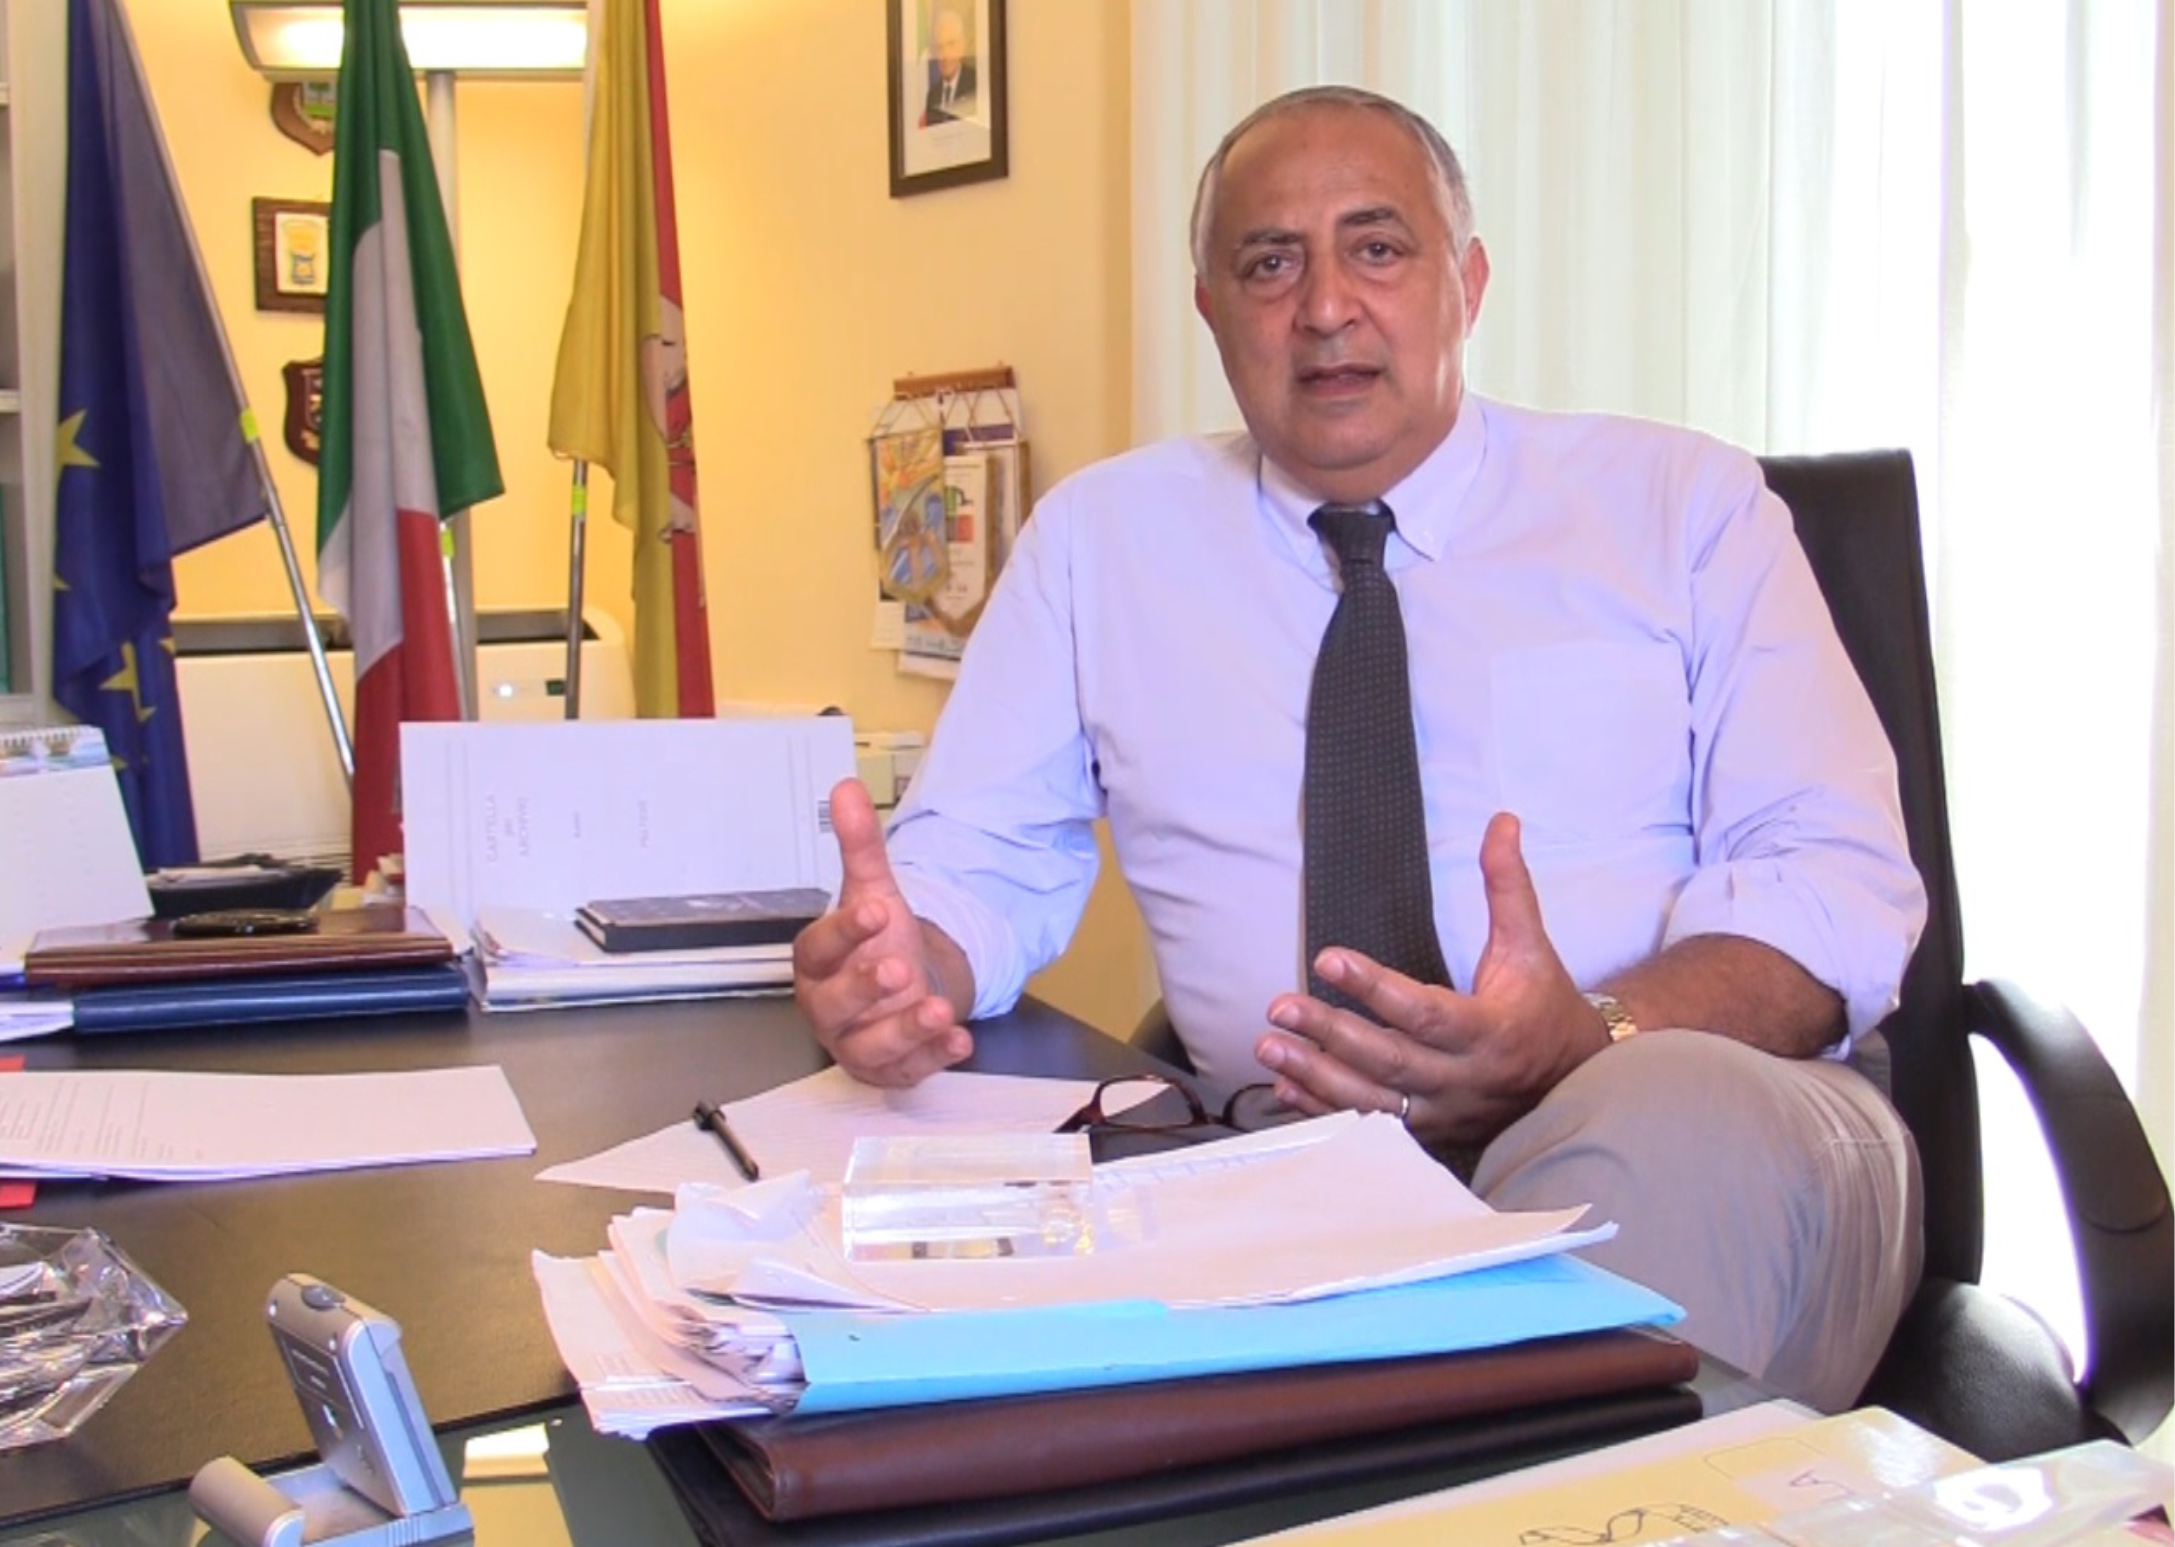 "La Classe non è Acqua": con il titolo di "Professore Emerito", l'Università di Palermo celebra l'eccezionale contributo del suo ex Rettore e attuale Sindaco, Roberto Lagalla, nel mondo accademico e civico